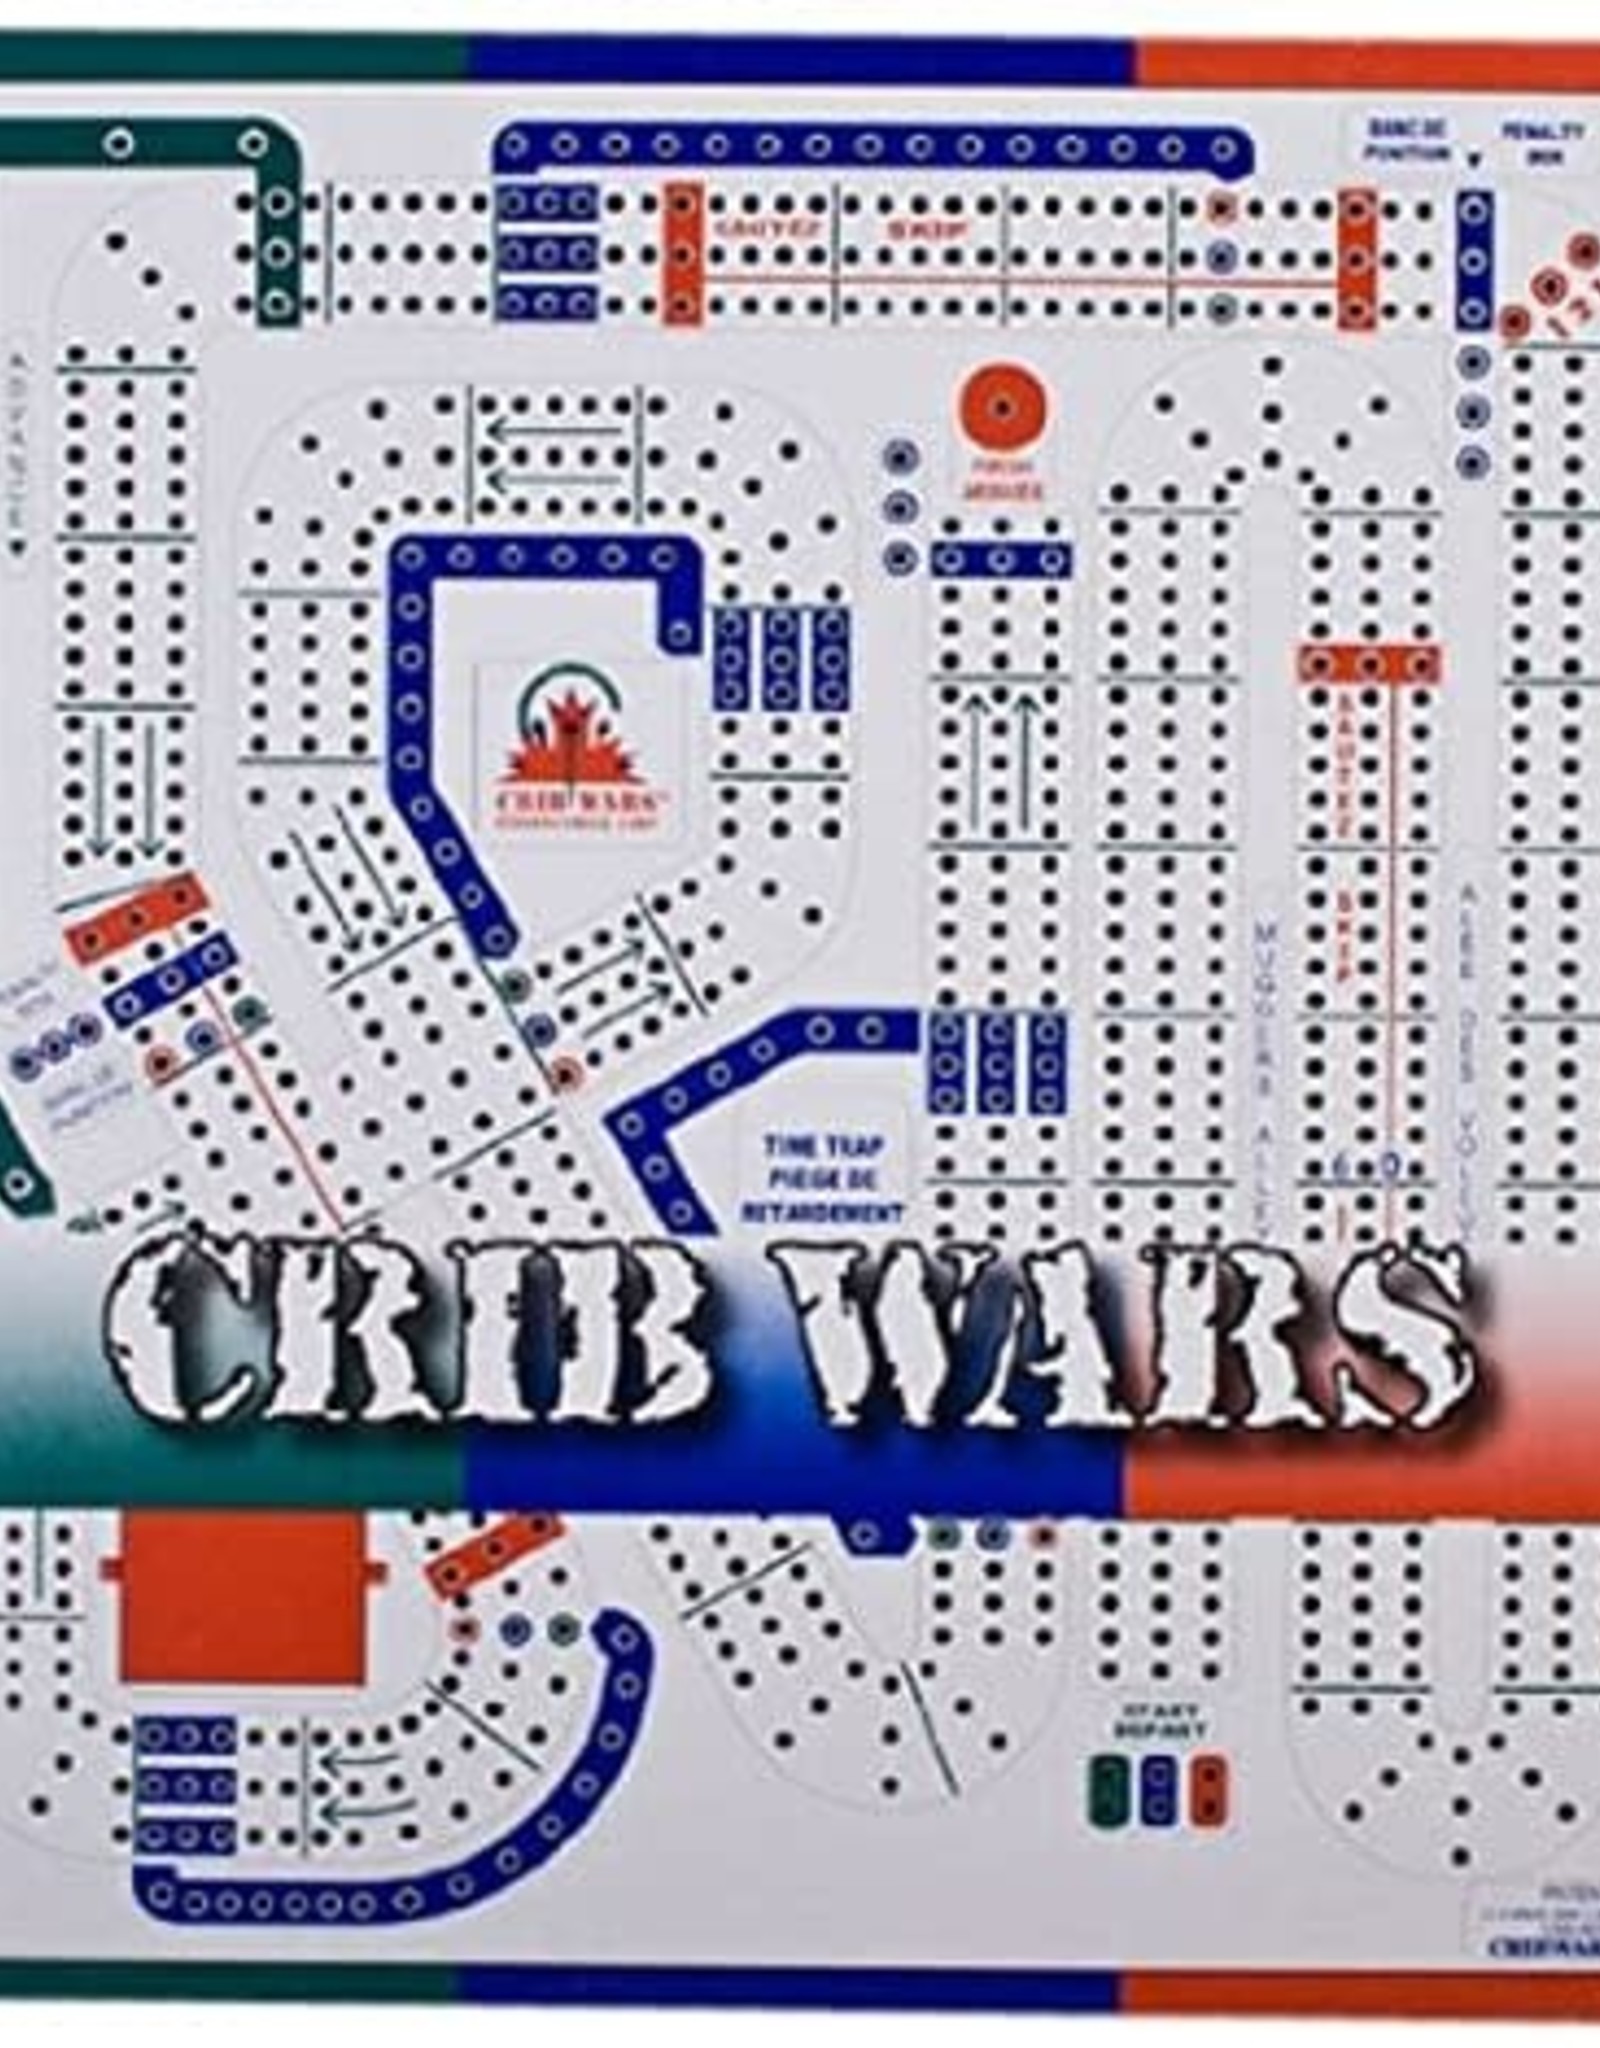 britishdarts Crib Wars